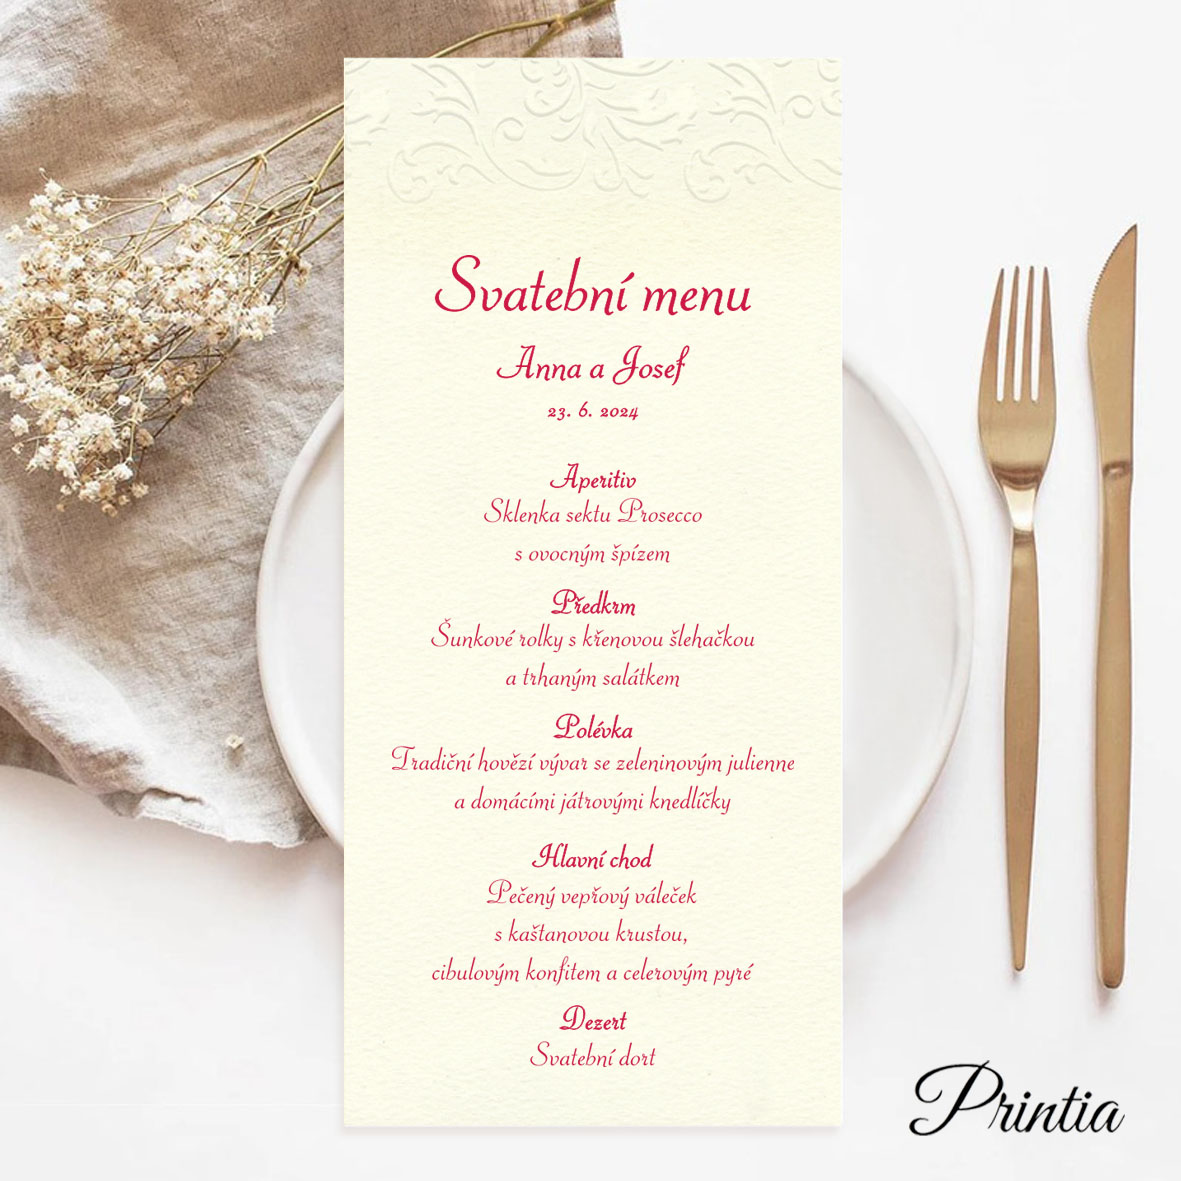 Svatební menu s vystouplým ornamentem